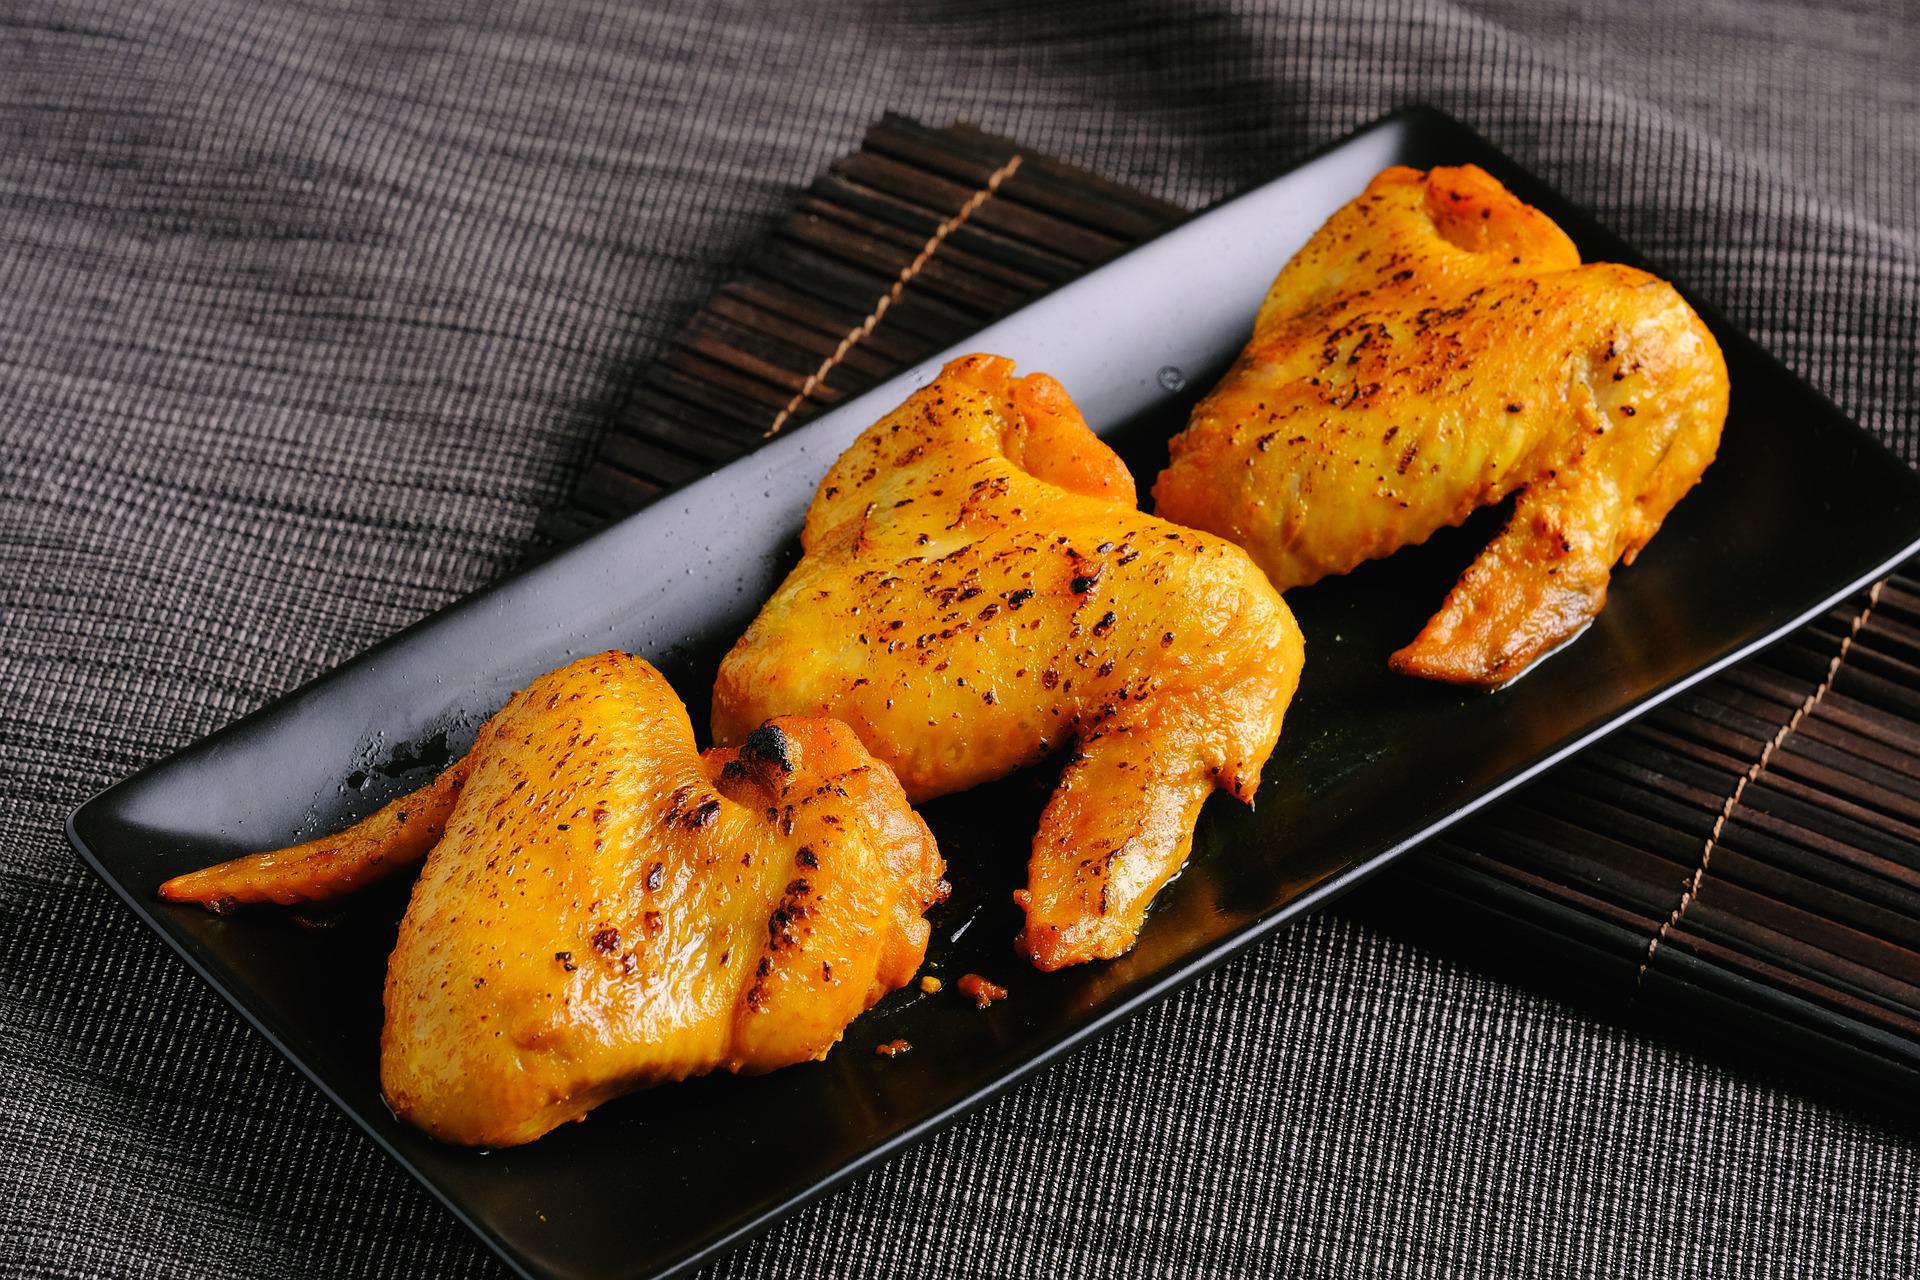 В духовке куриные крылья жарьте 25 минут. Она должна быть разогрета до 200 °С. Фото © Pixabay